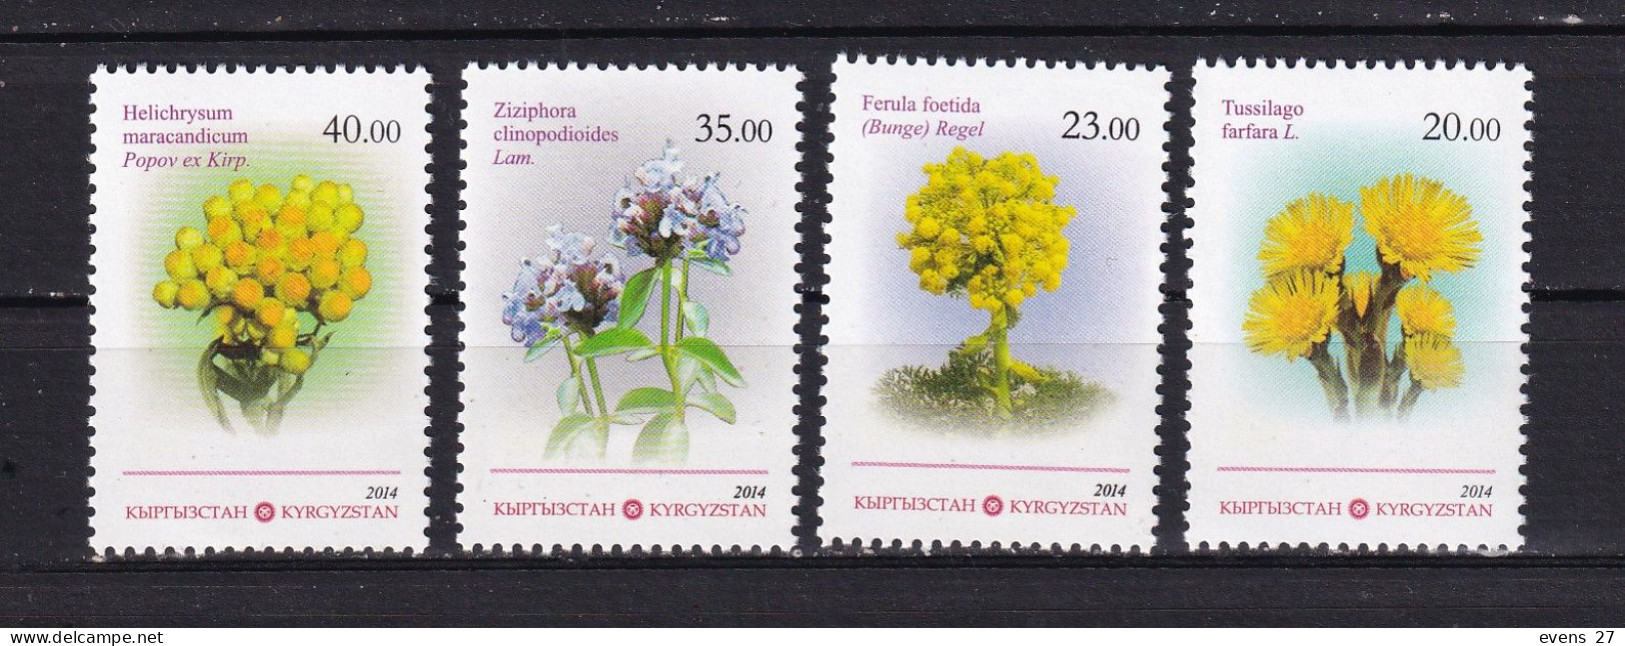 KYRGYZSTAN-2014- MEDICINAL PLANTS-MNH - Heilpflanzen